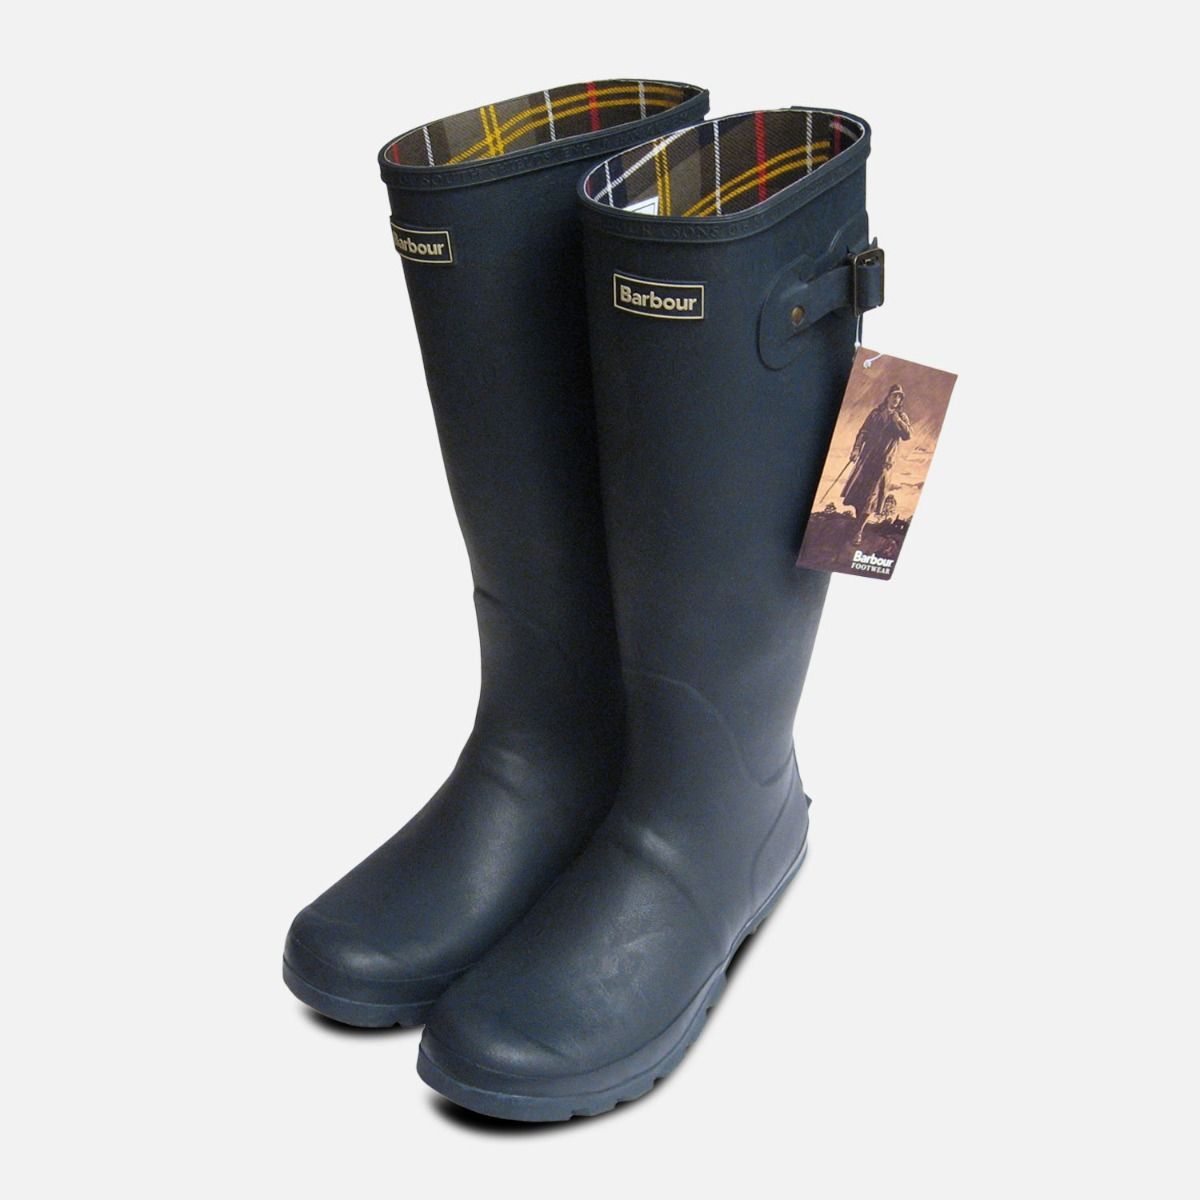 barbour wellington boots sale Cheaper 